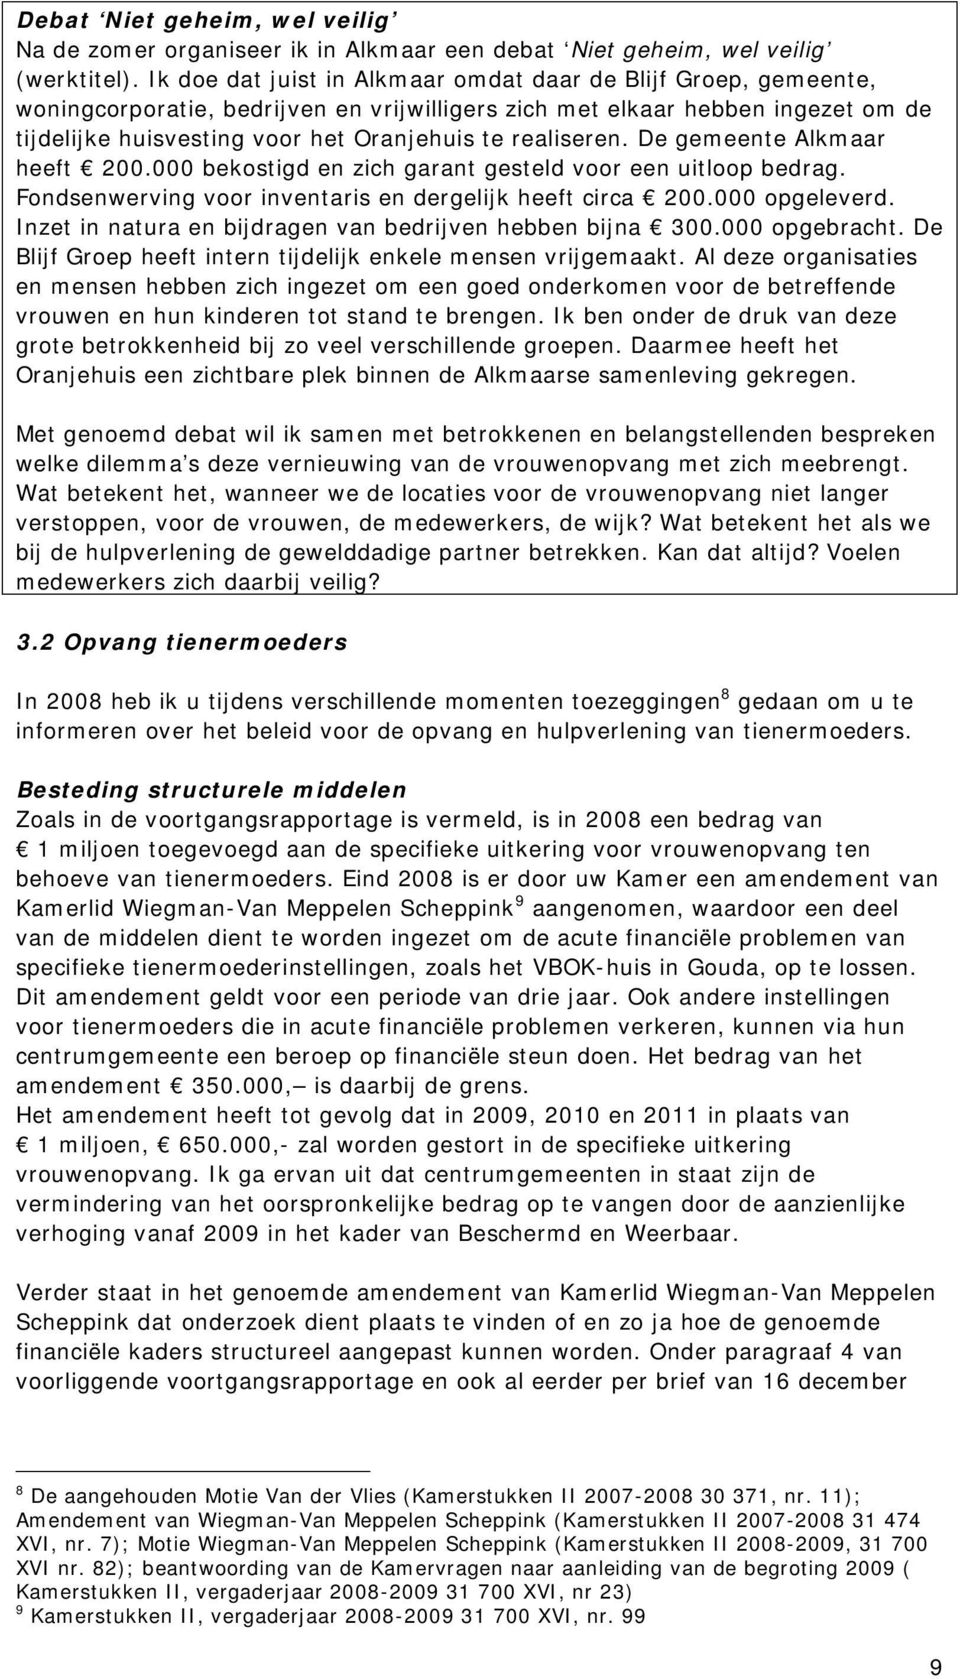 realiseren. De gemeente Alkmaar heeft 200.000 bekostigd en zich garant gesteld voor een uitloop bedrag. Fondsenwerving voor inventaris en dergelijk heeft circa 200.000 opgeleverd.